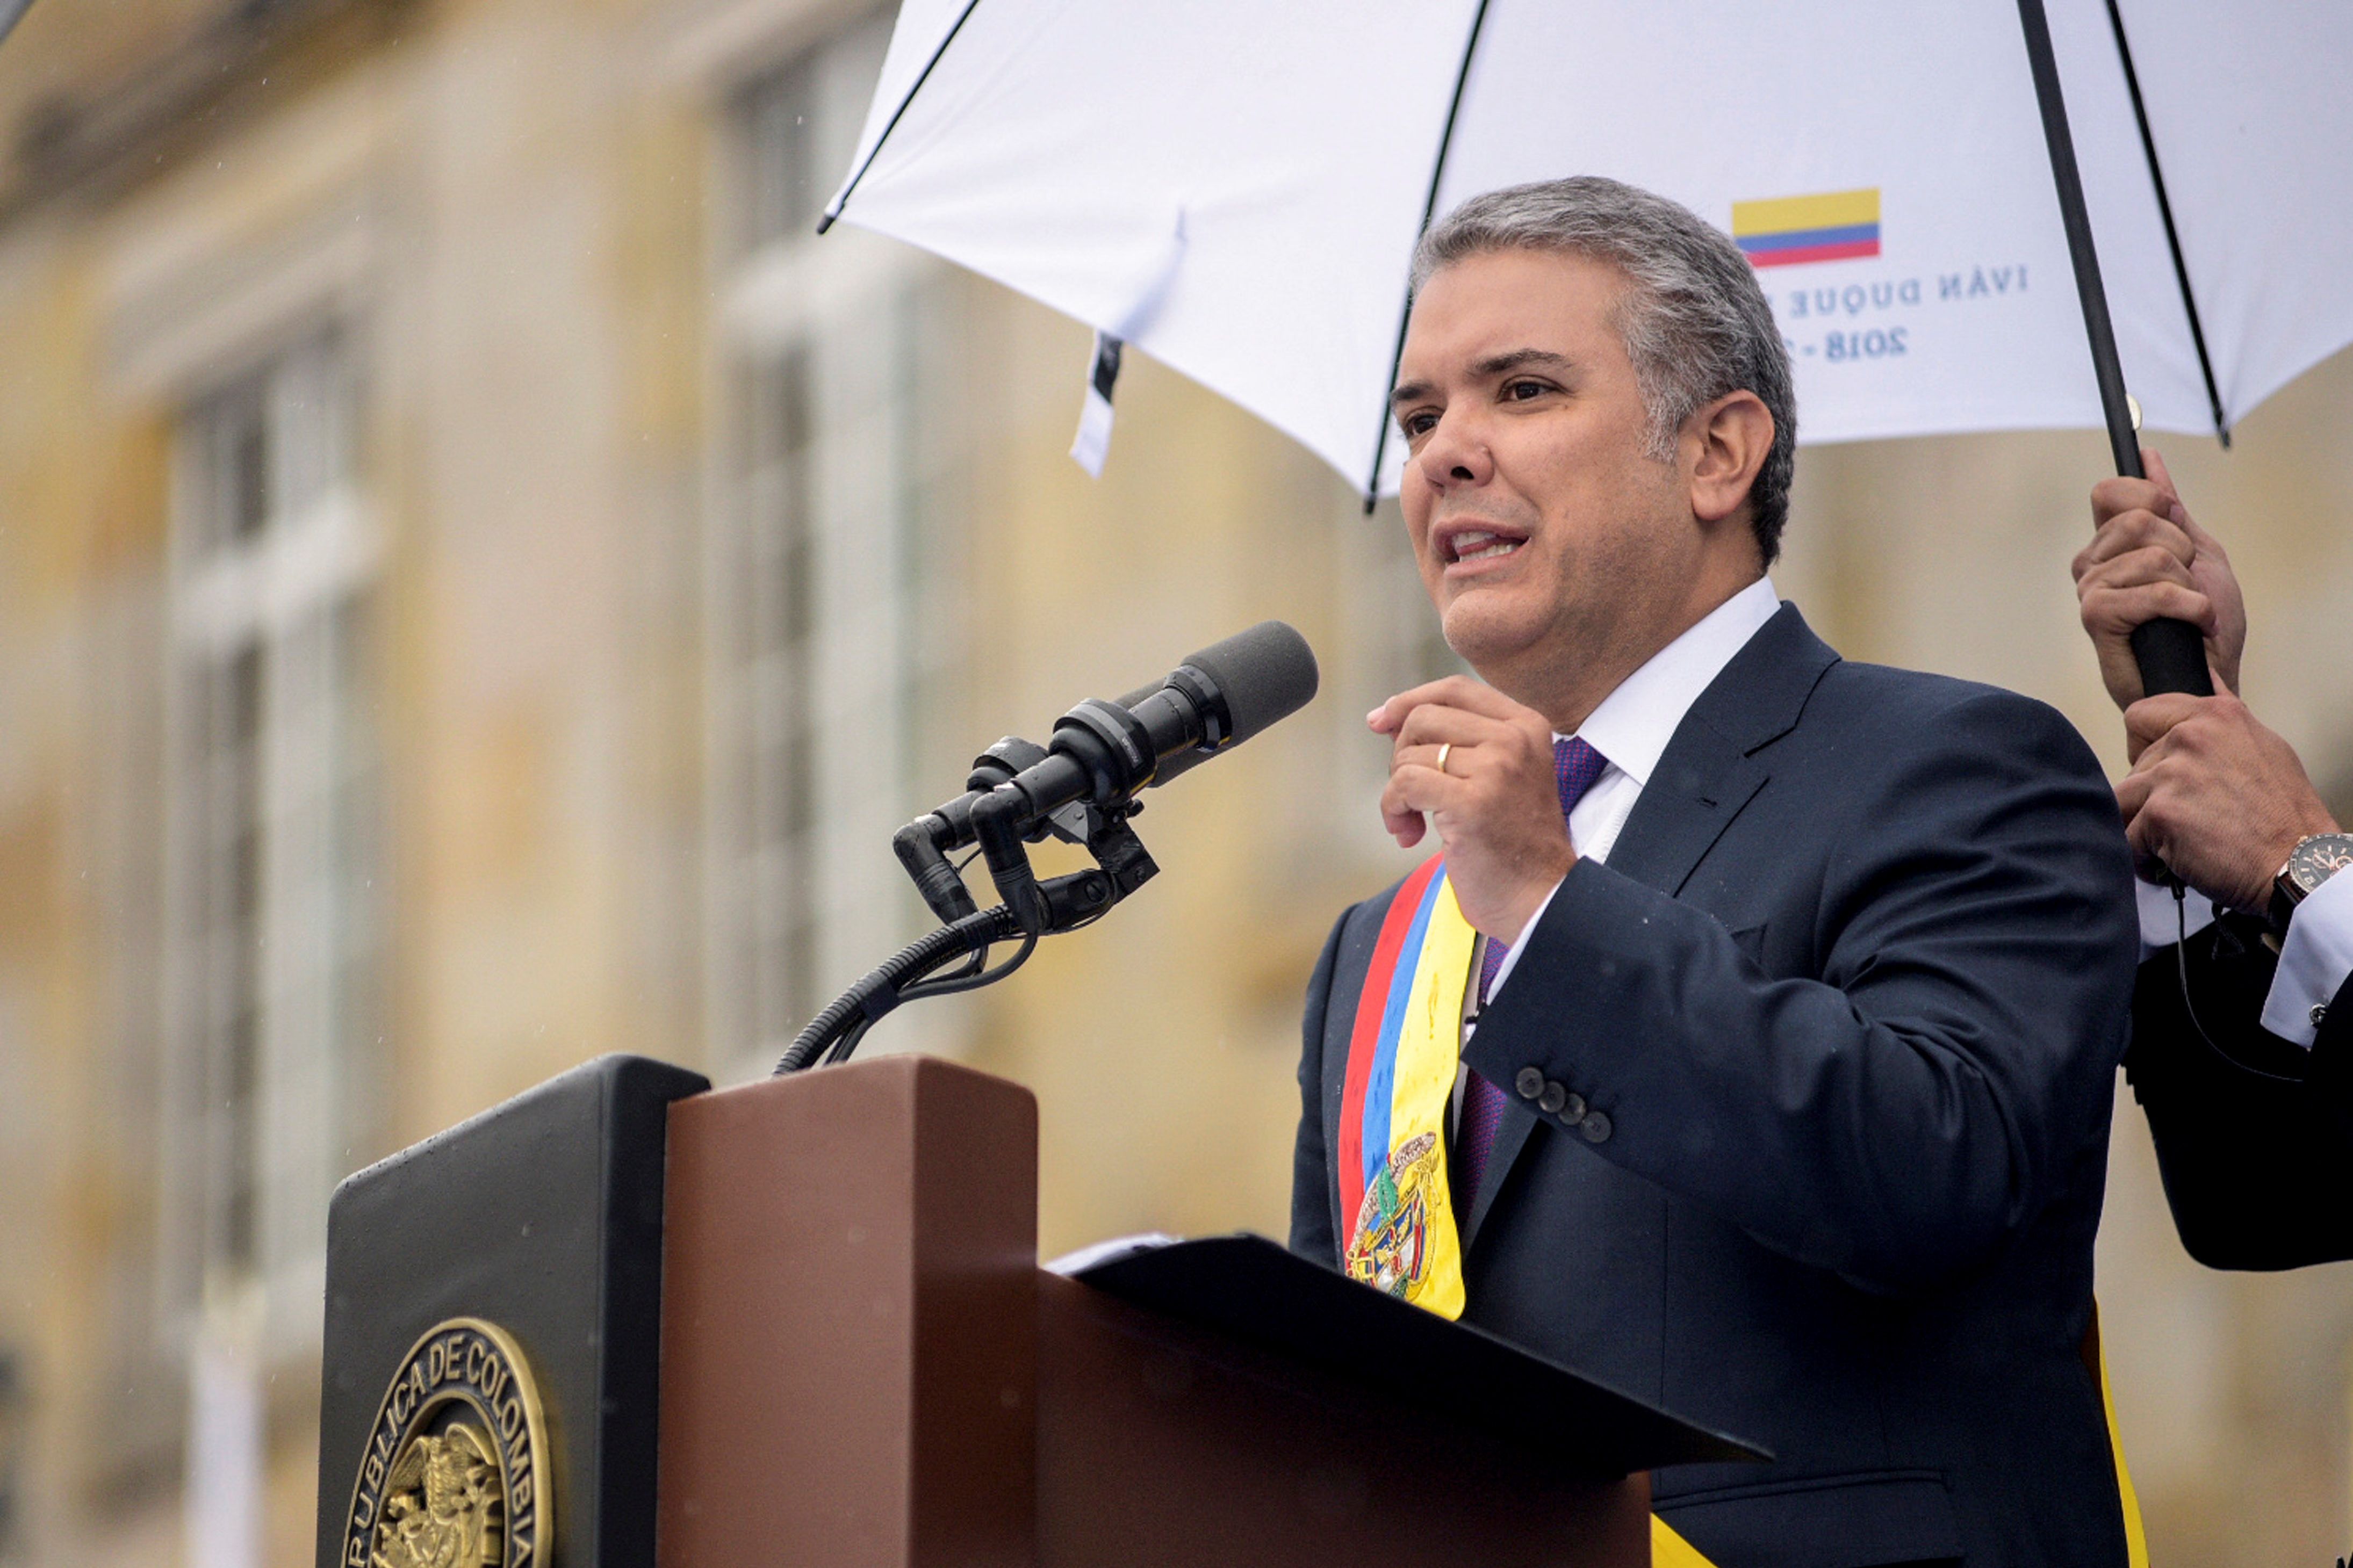  كلمة رئيس كولومبيا إيفان دوكى 